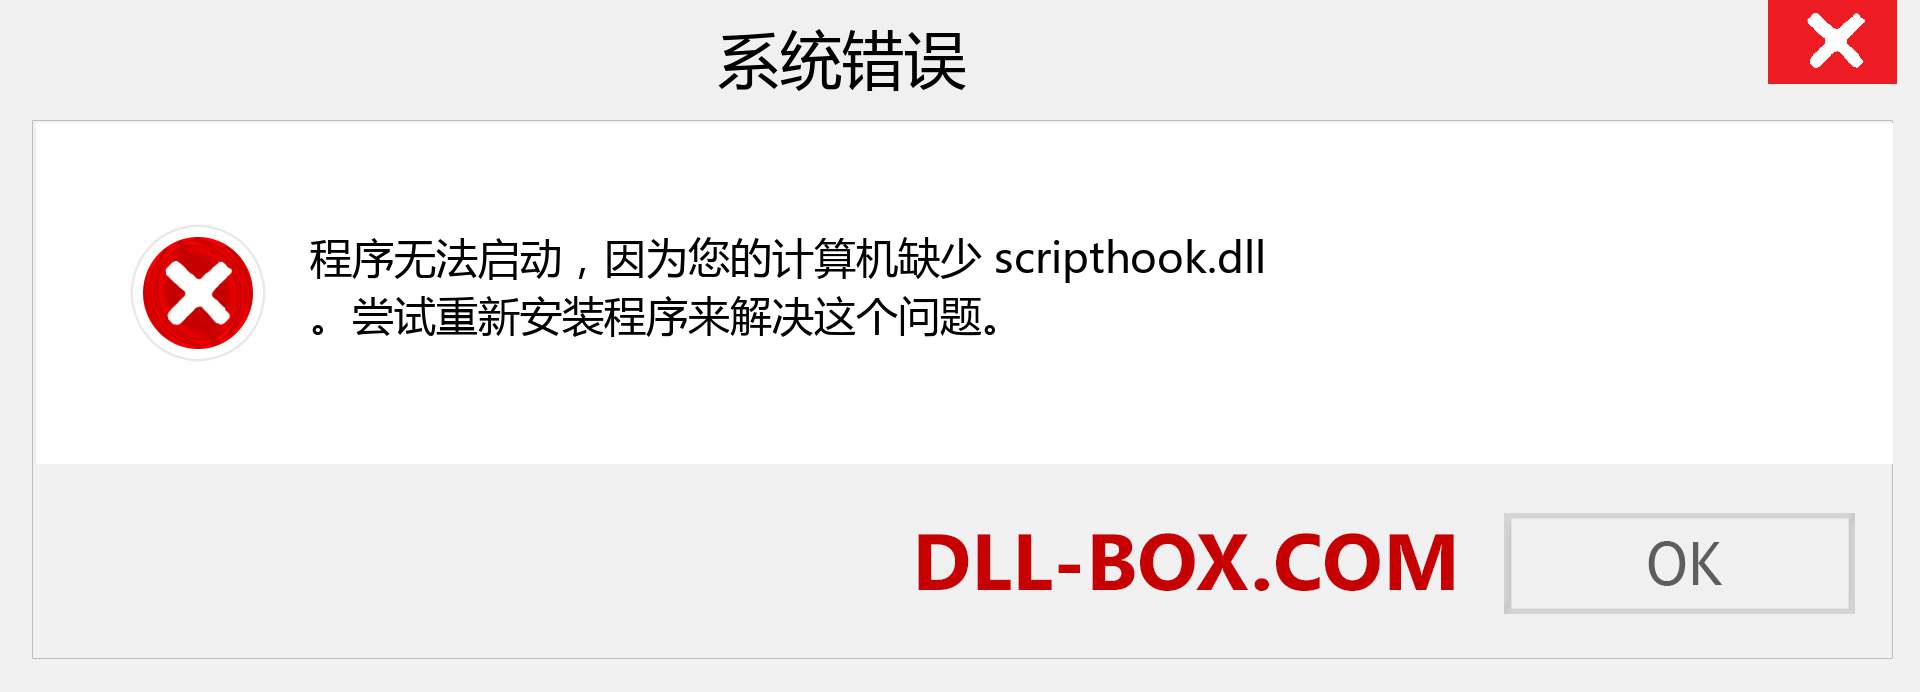 scripthook.dll 文件丢失？。 适用于 Windows 7、8、10 的下载 - 修复 Windows、照片、图像上的 scripthook dll 丢失错误